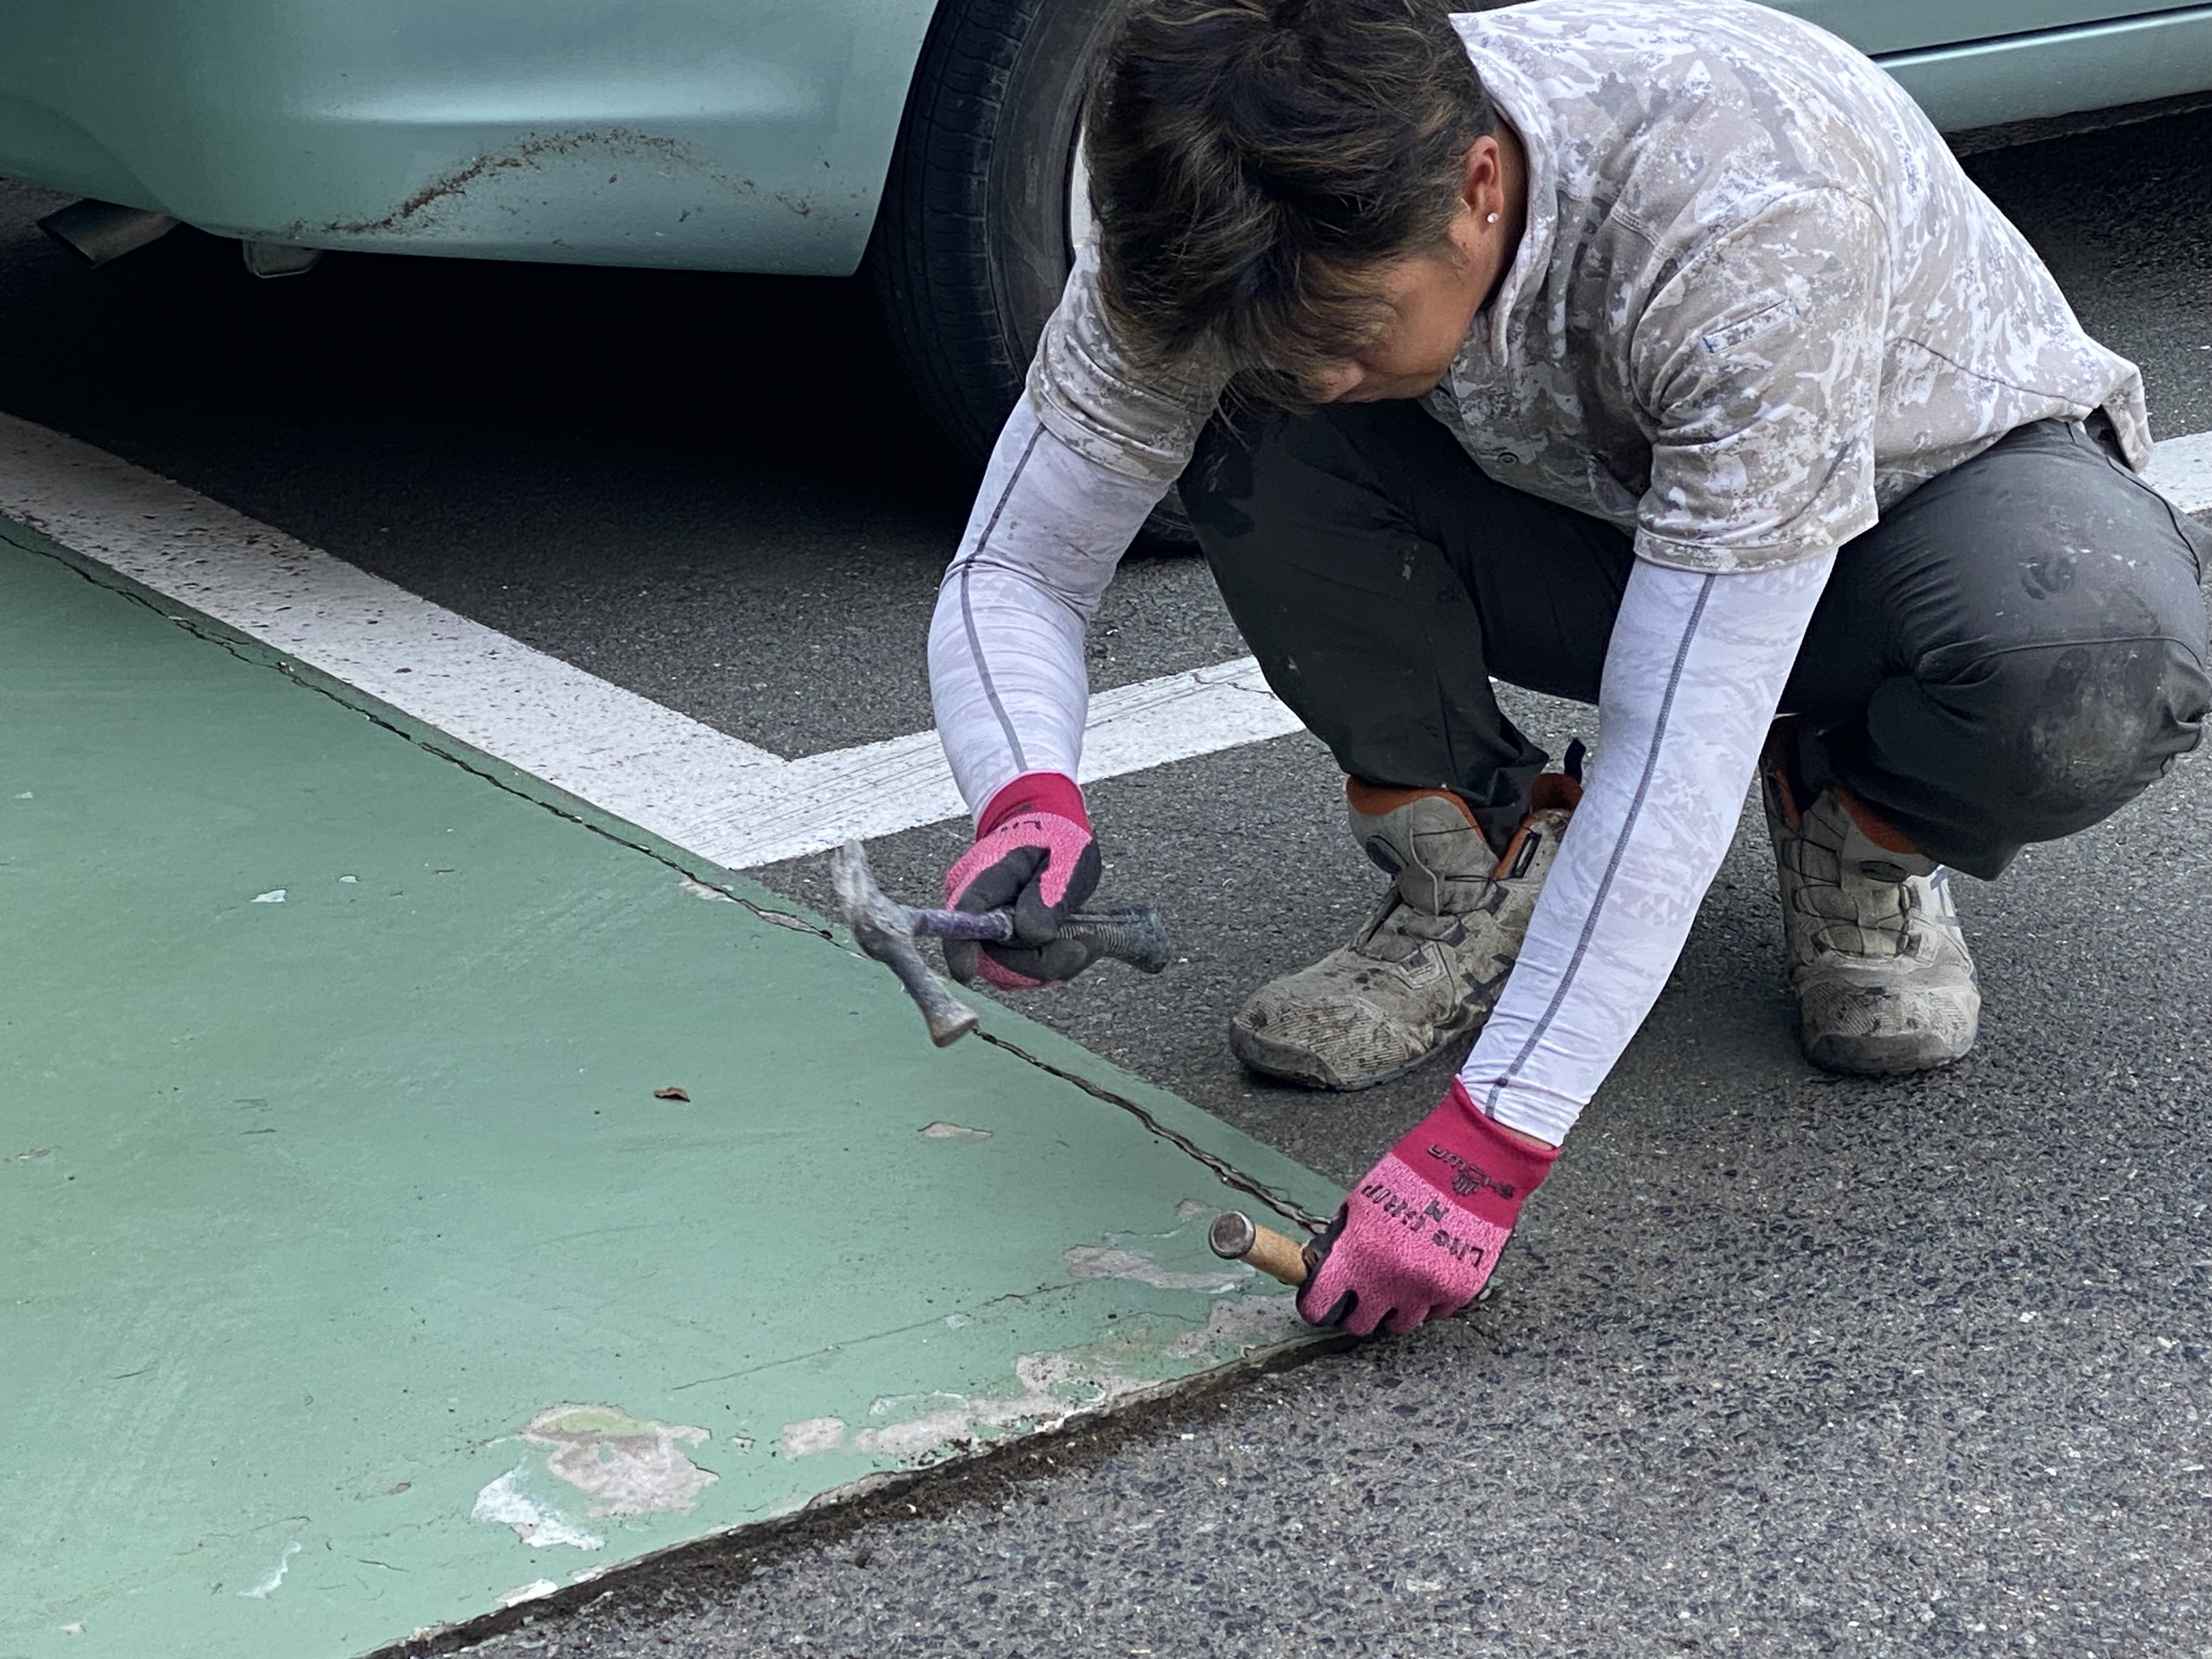 福岡県大野城市山田自動車様にて床の作り替えを行っています。5/2着工です。【OB様より】